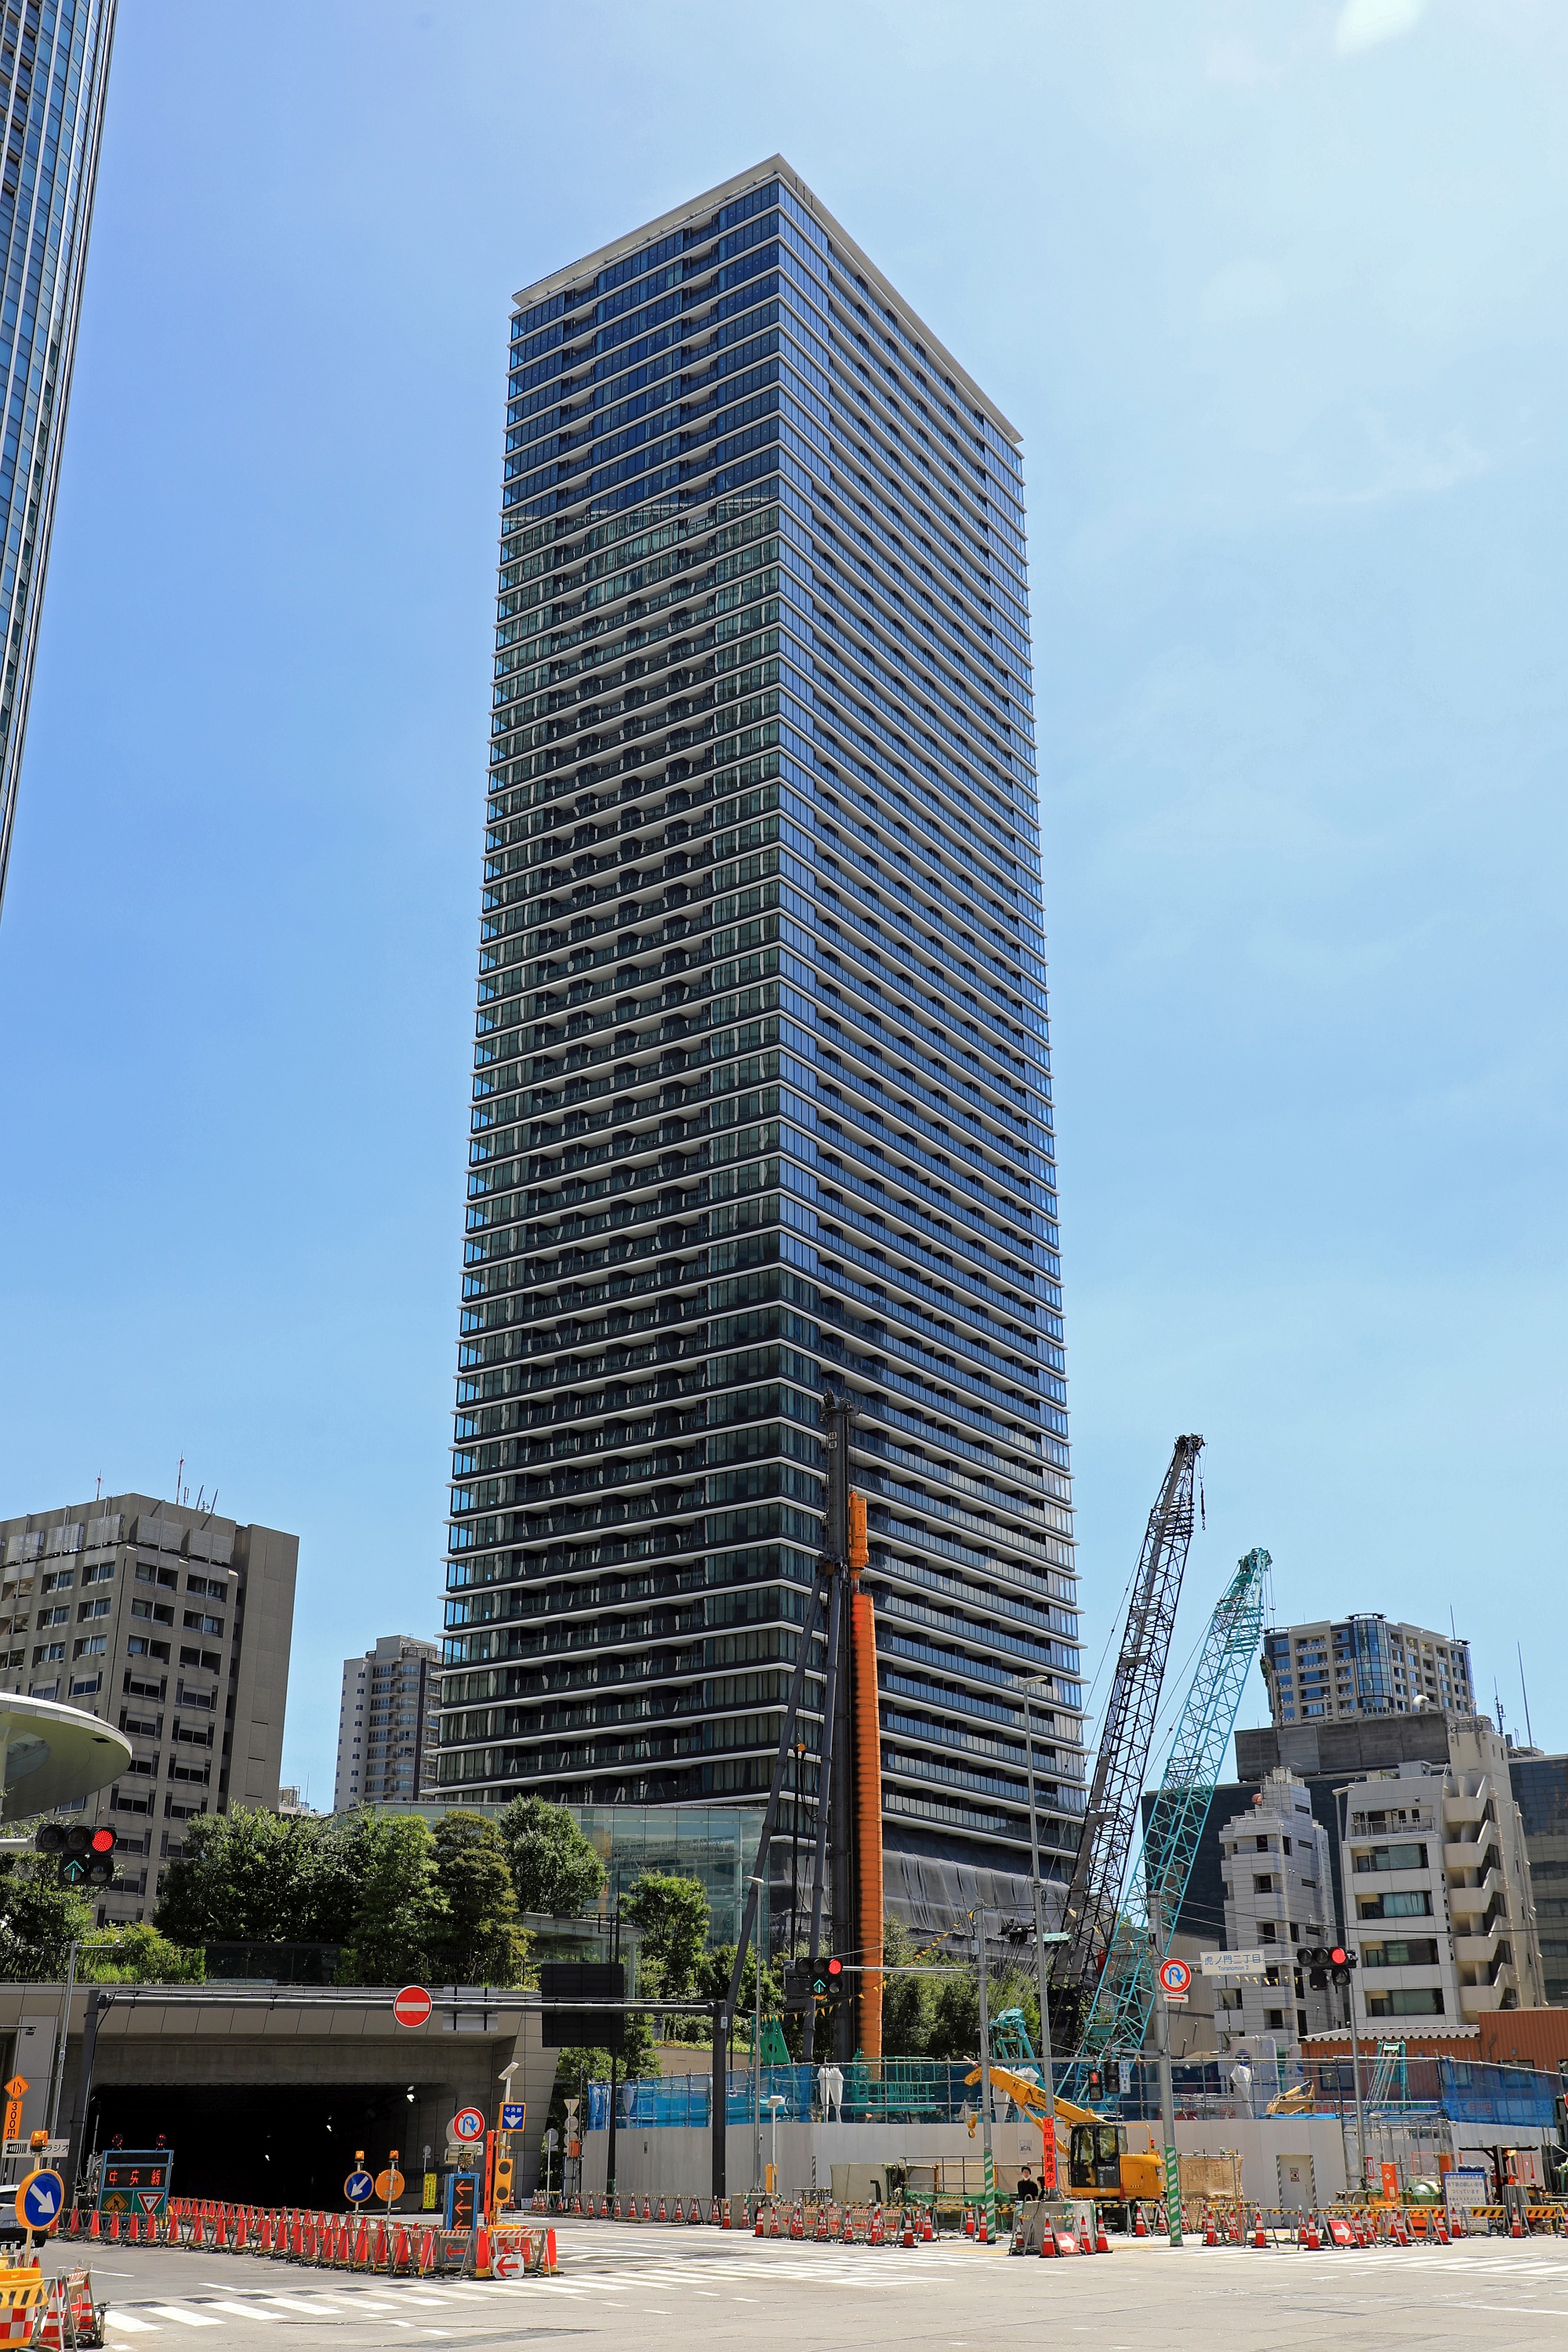 仮称 虎ノ門ヒルズレジデンシャルタワー 超高層マンション 超高層ビル